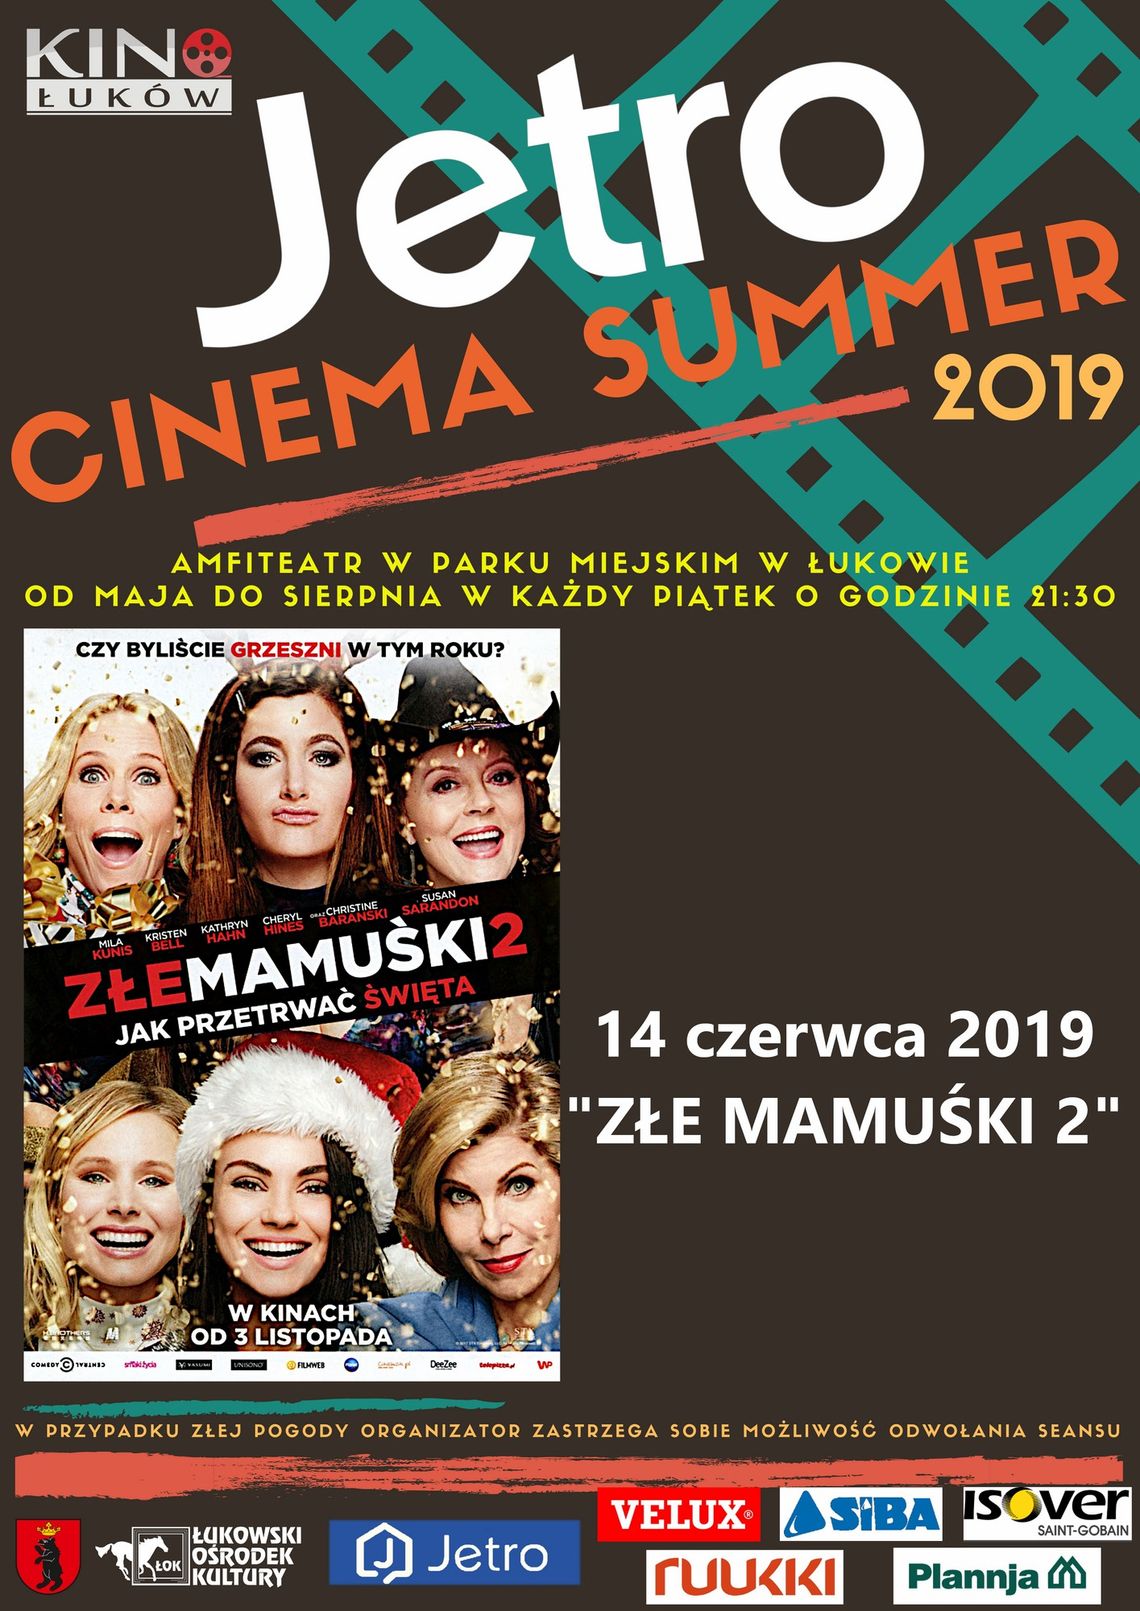 Jetro Cinema Summer 2019 "Złe mamuśki 2" /14 czerwca 2019